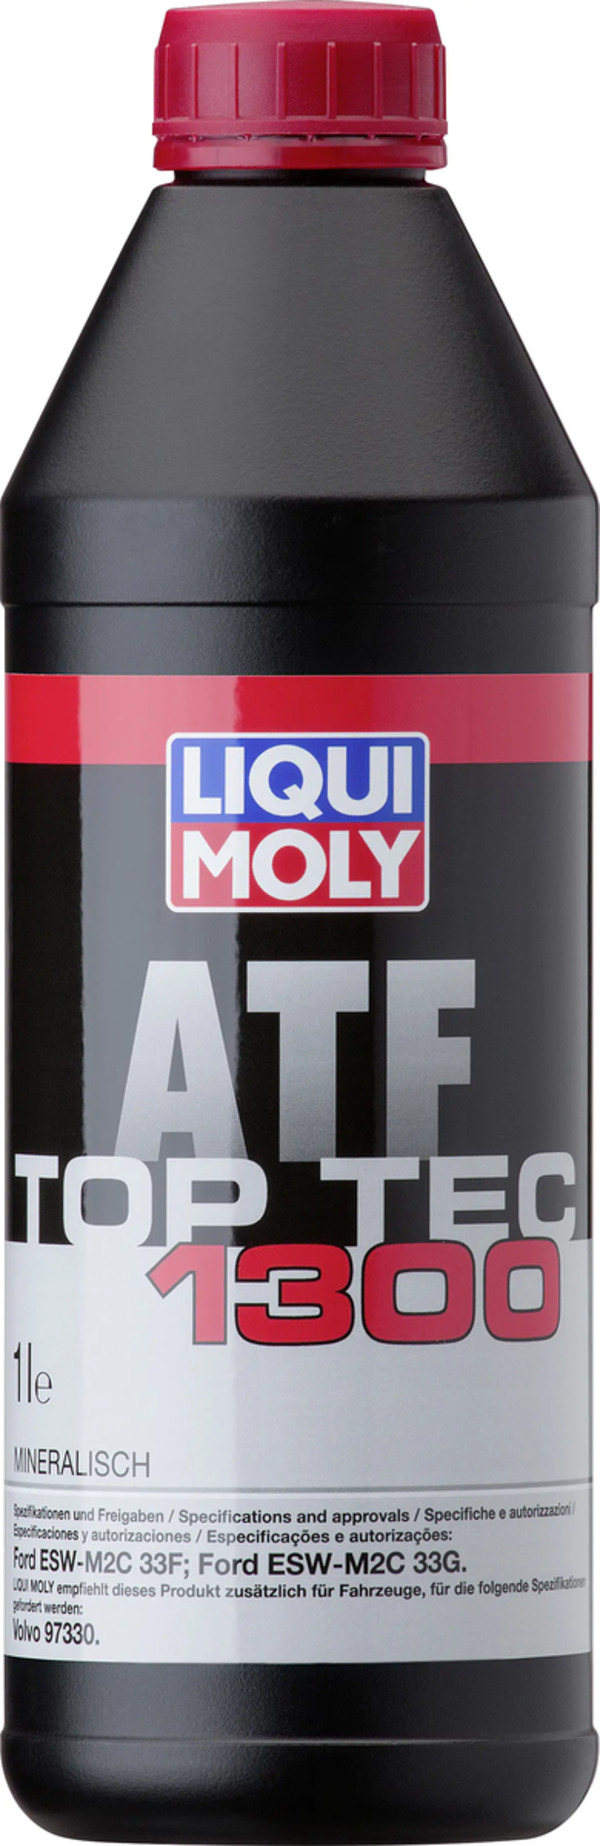 Bild 1 von Liqui Moly Getriebeöl Top Tec ATF 1300 1 L